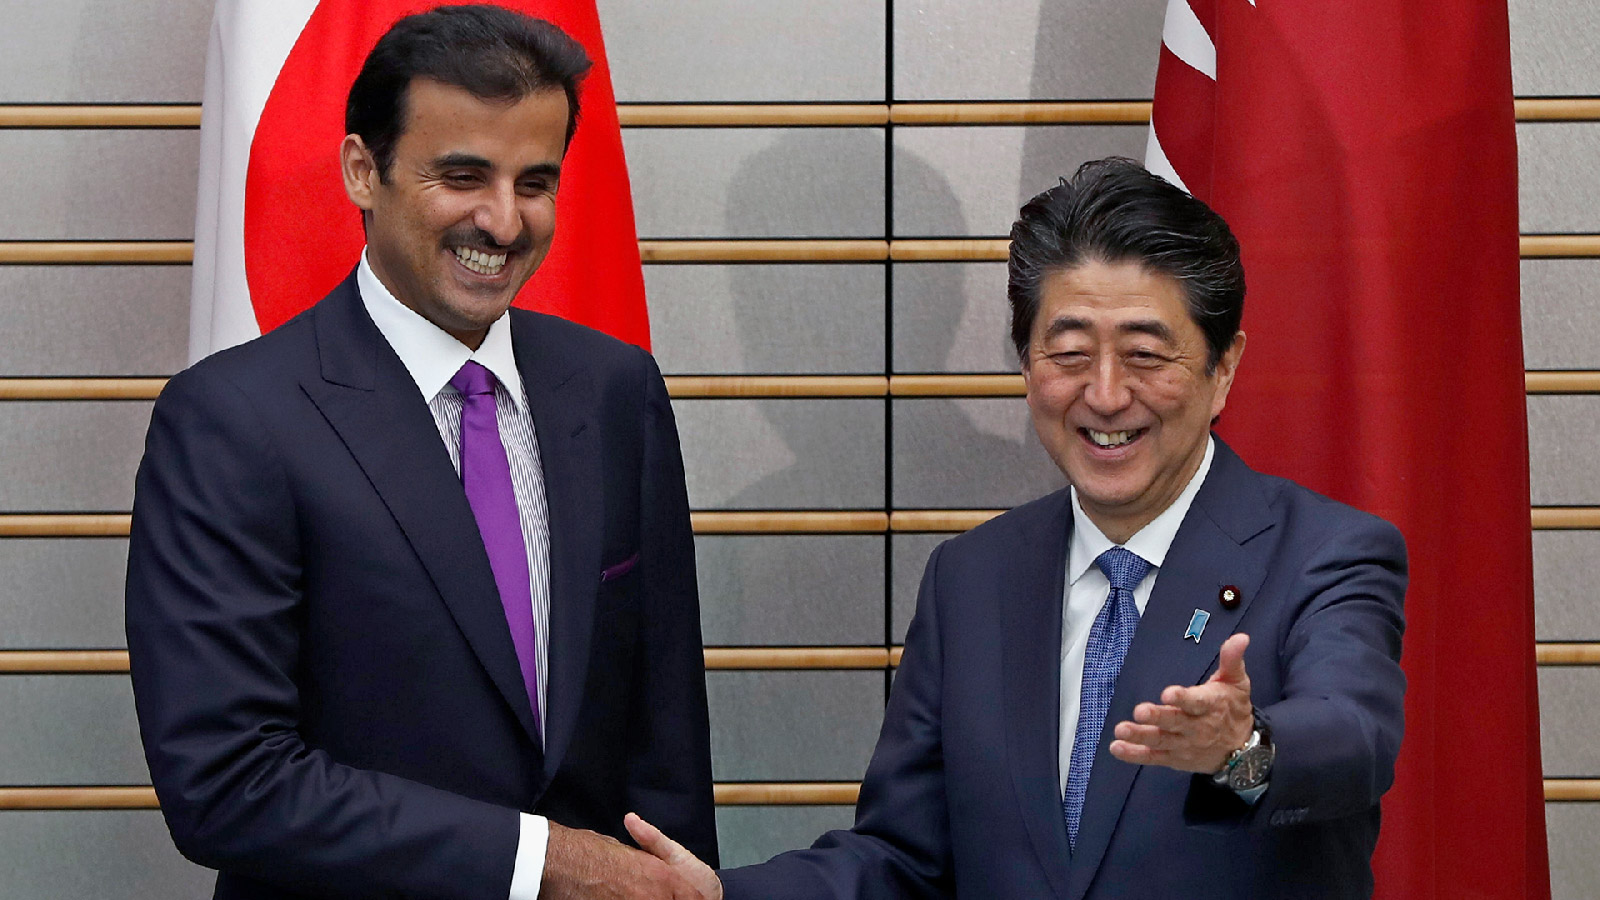 ‪زيارة أمير قطر إلى اليابان شهدت التوقيع على عدة اتفاقيات اقتصادية شملت النقل والمواصلات والبنية التحتية‬ زيارة أمير قطر إلى اليابان شهدت التوقيع على عدة اتفاقيات اقتصادية شملت النقل والمواصلات والبنية التحتية (الأوروبية)